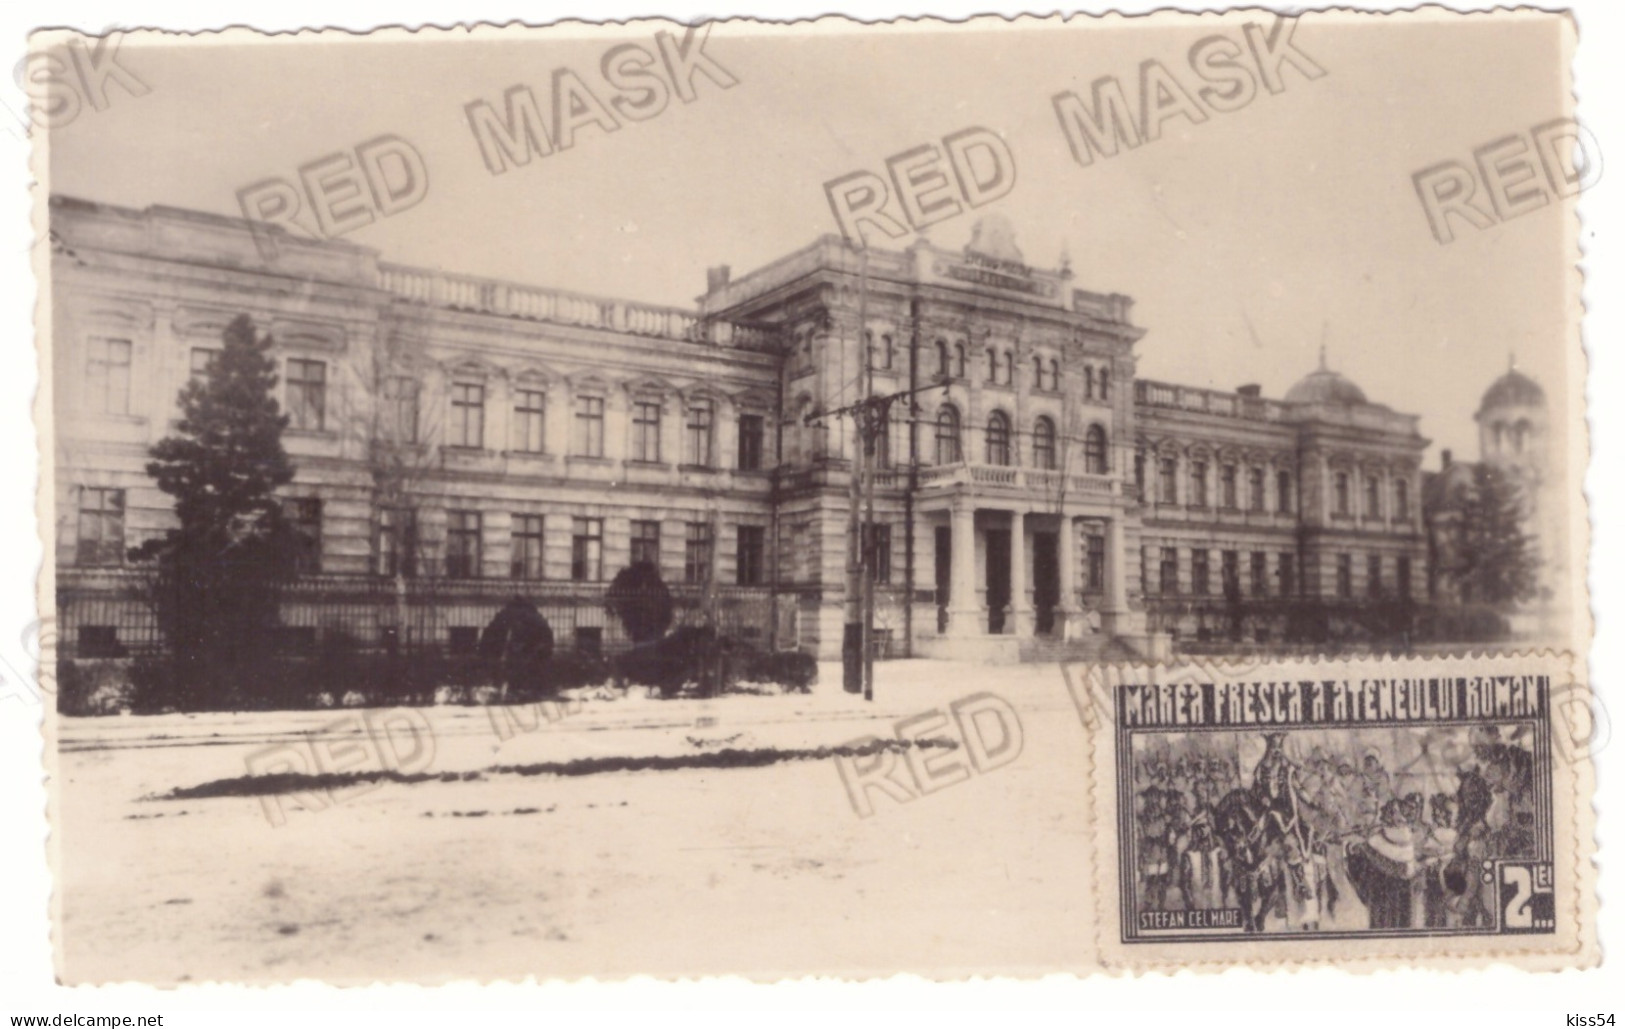 MOL 8 - 21607 CHISINAU, Military School, Moldova - Old Postcard, Real PHOTO - Used - 1936 - Moldawien (Moldova)